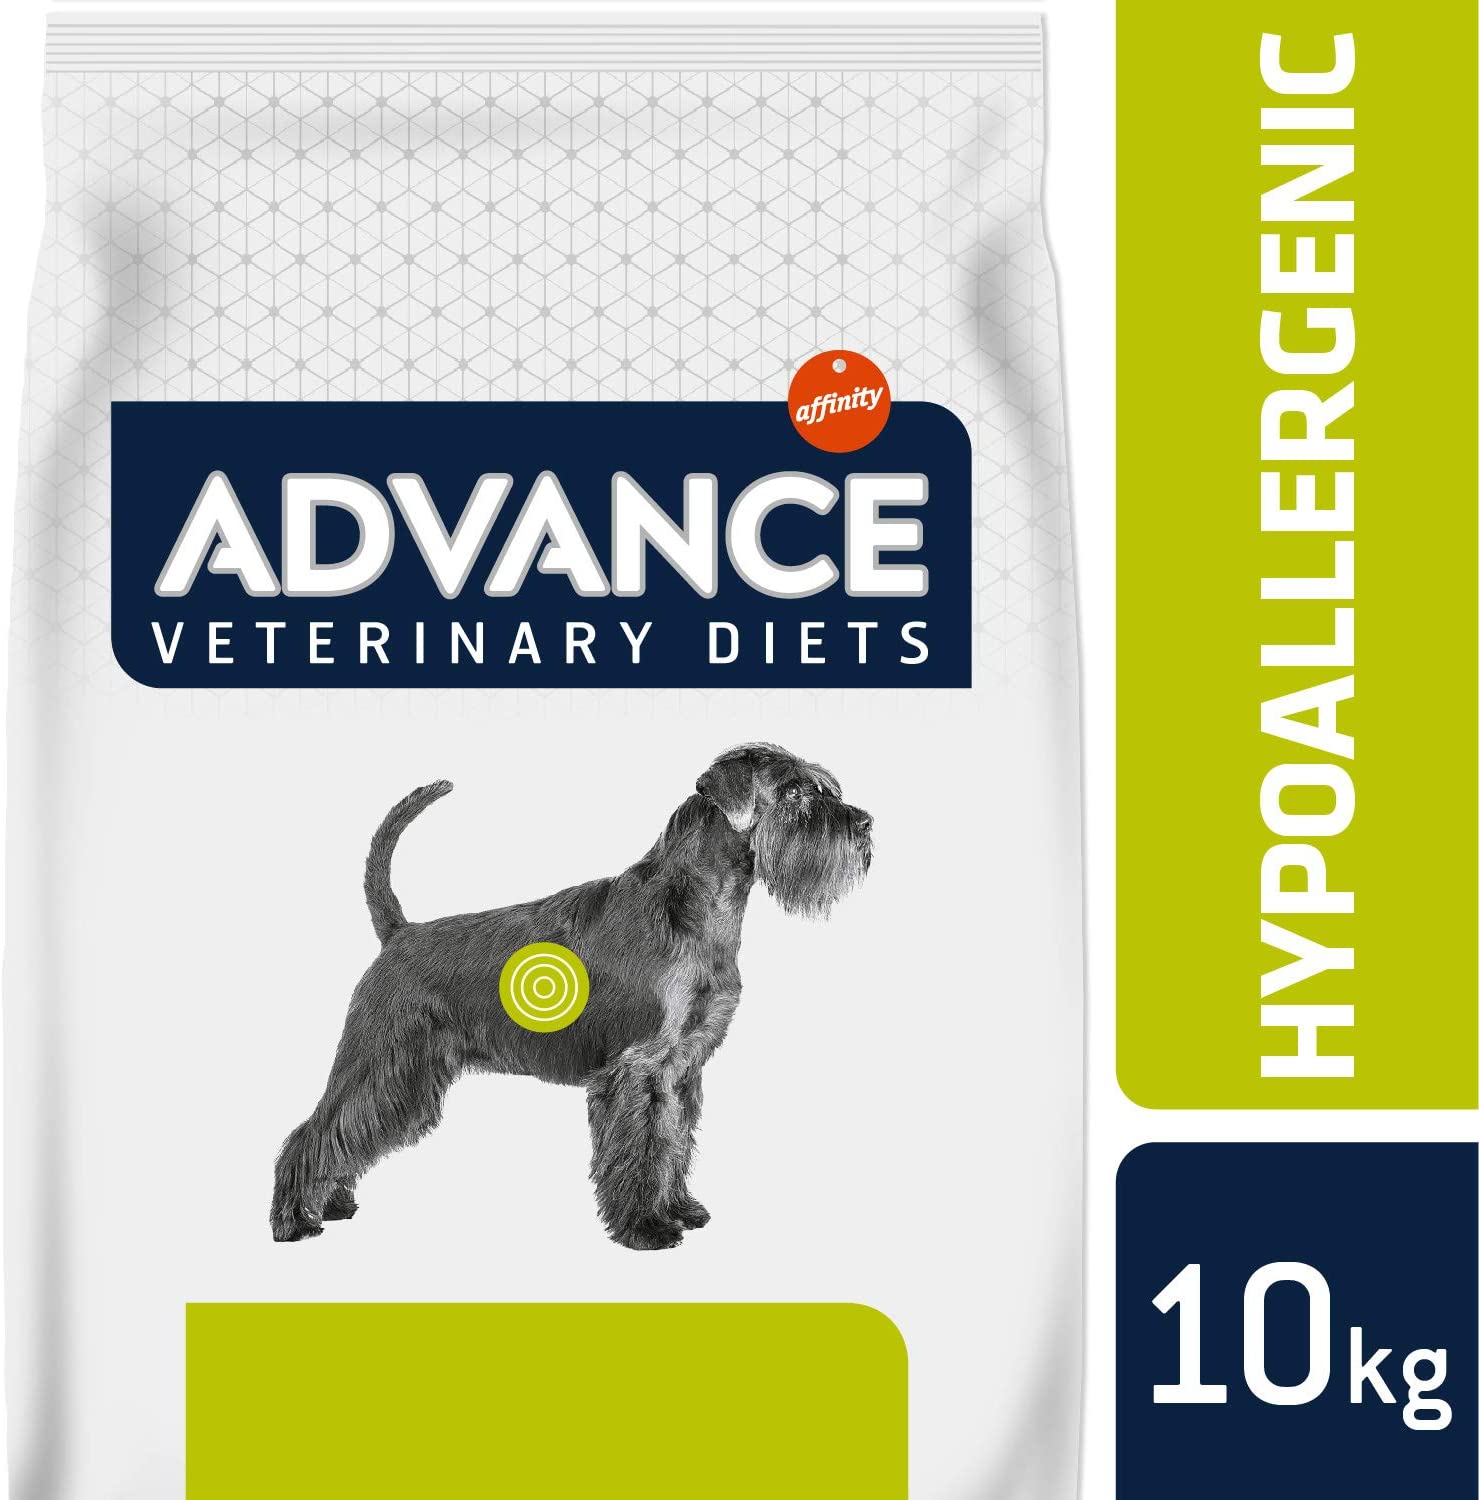  Avance Veterinary Diets Hypoallergenic - Pienso hipoalergénico para Perros con intolerancias alimentarias - 10 kg 